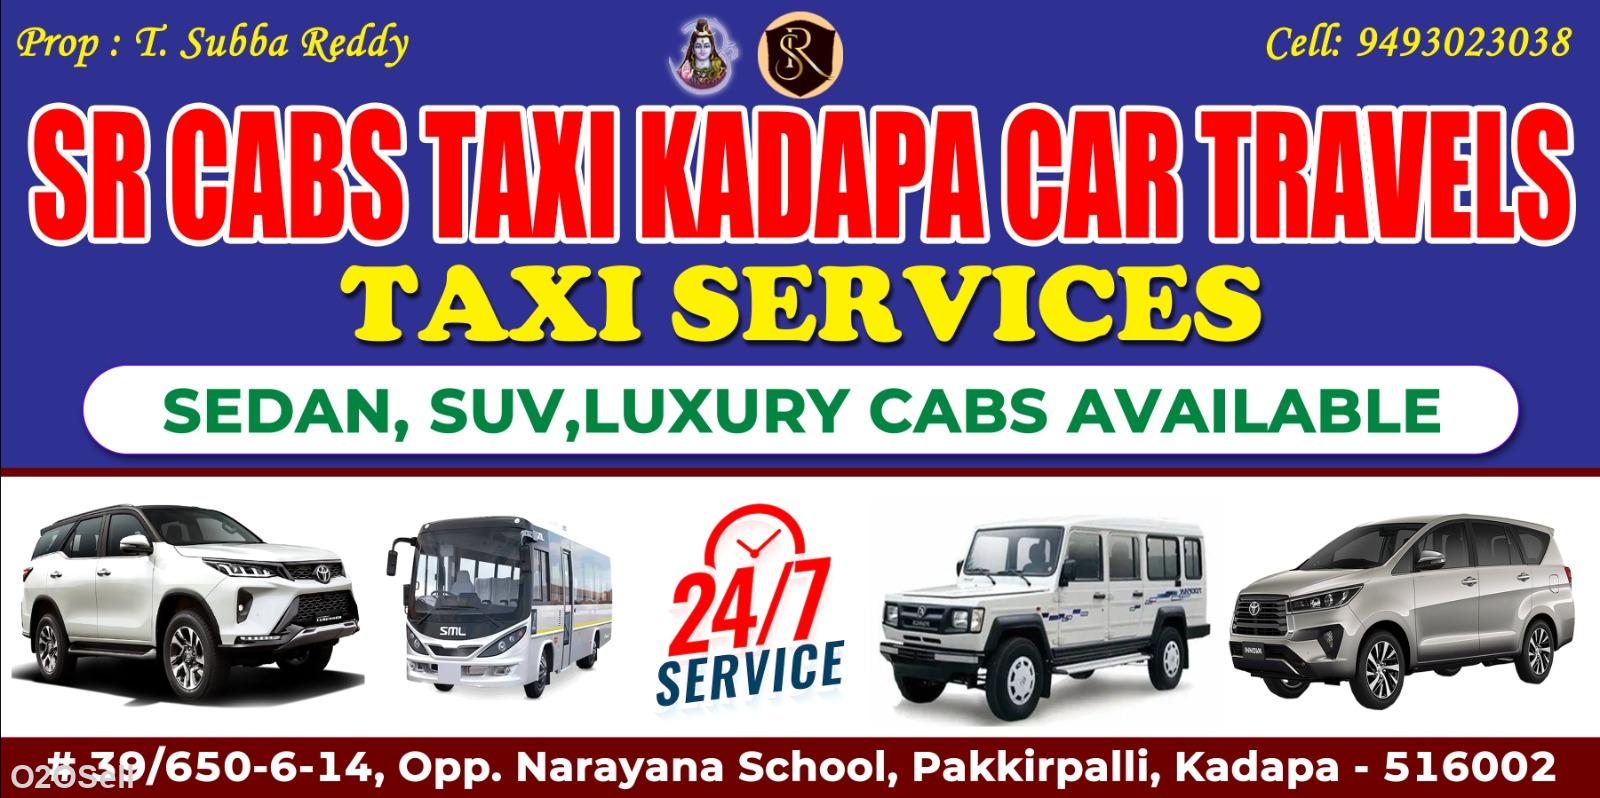 SR Cabs Kadapa - 09493023038 - Profile Image